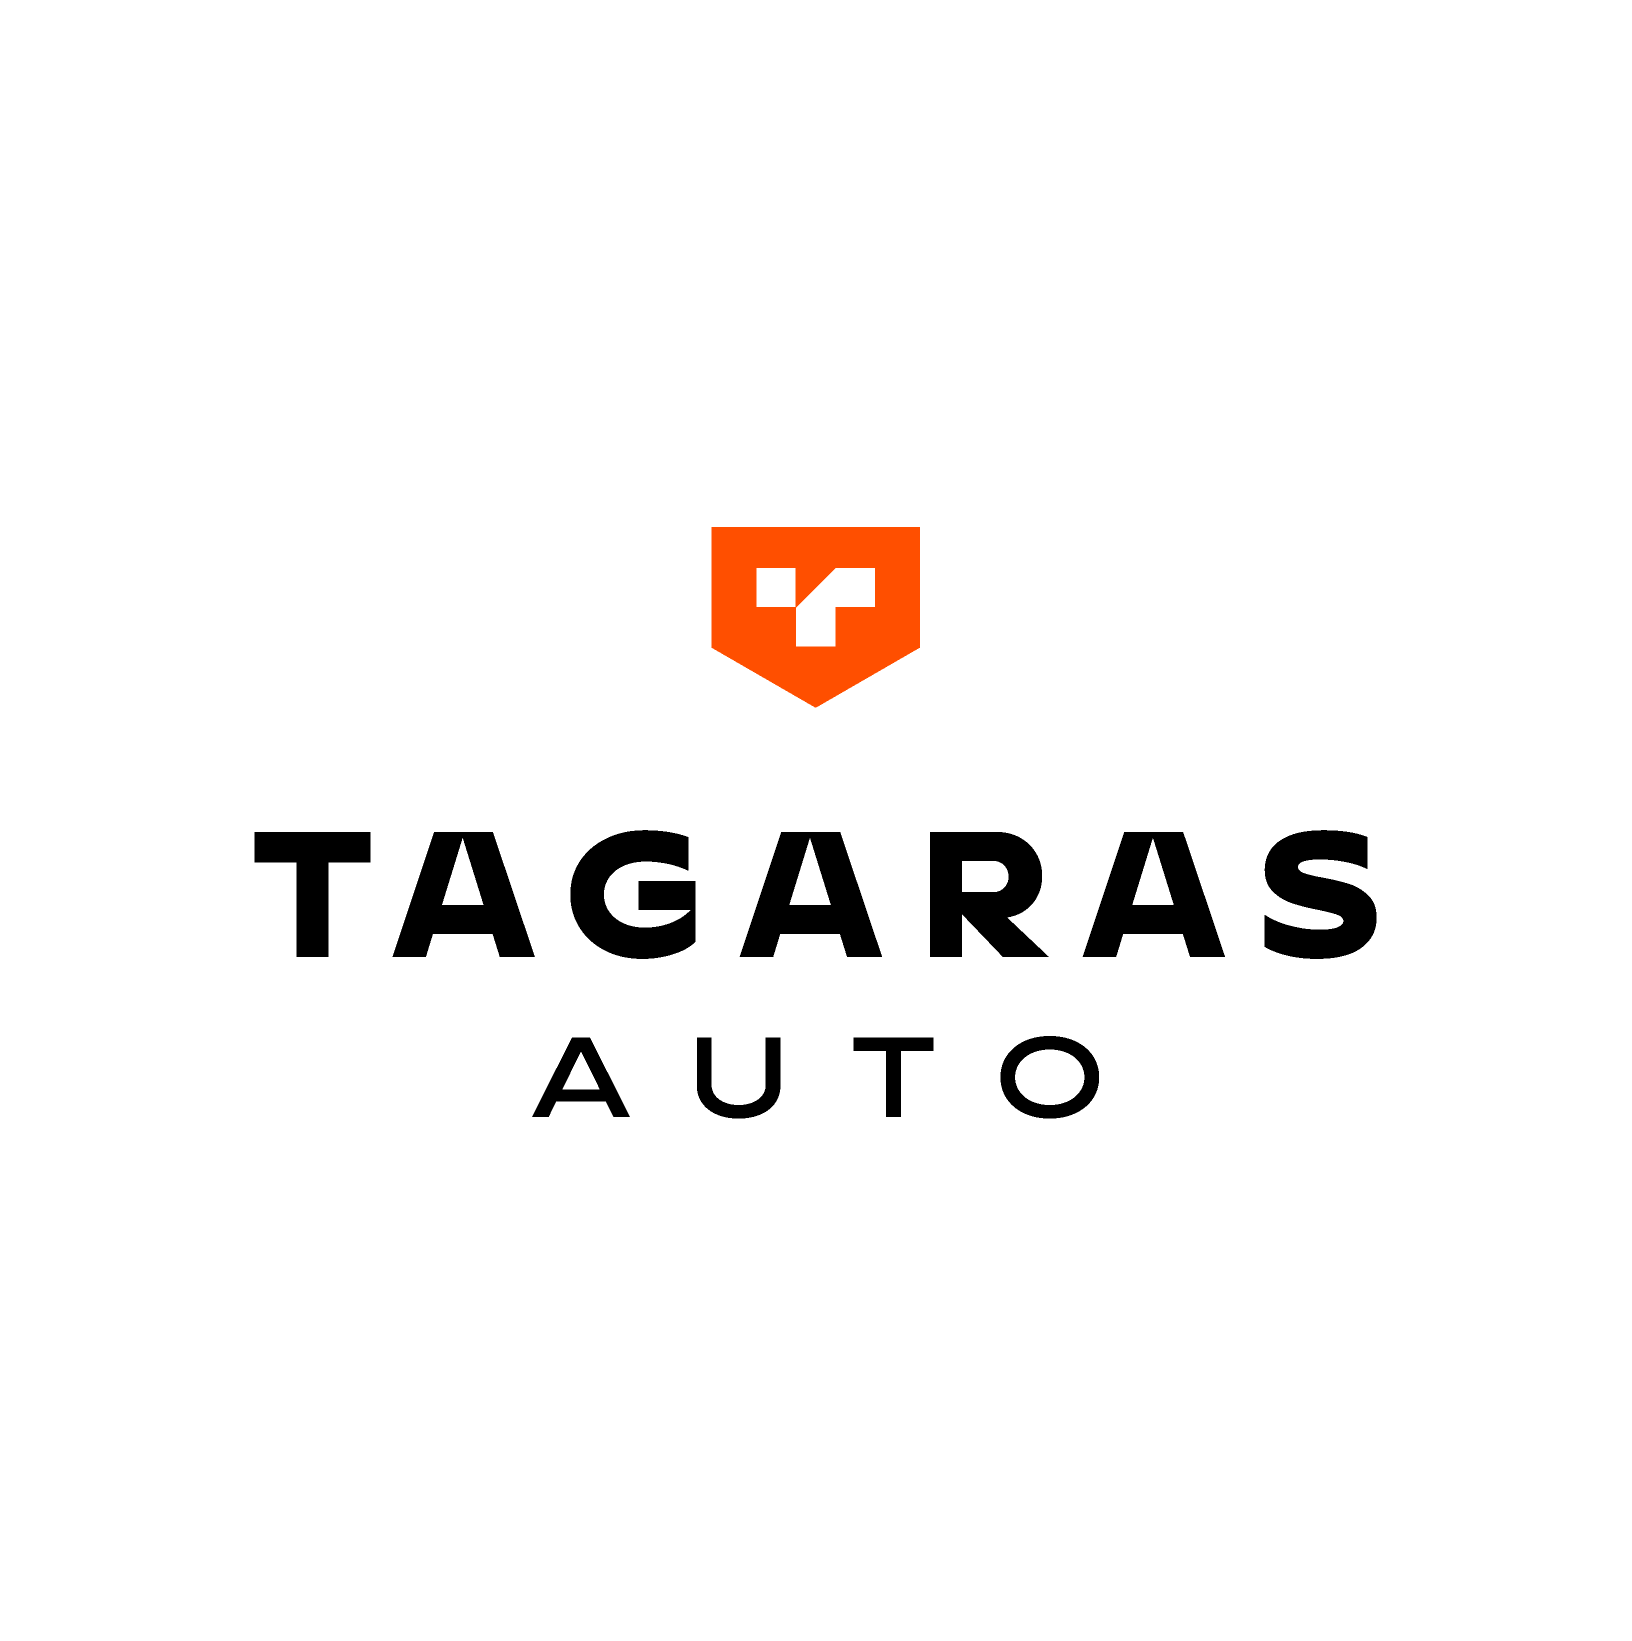 Tagaras Auto branding by VIMA GURU